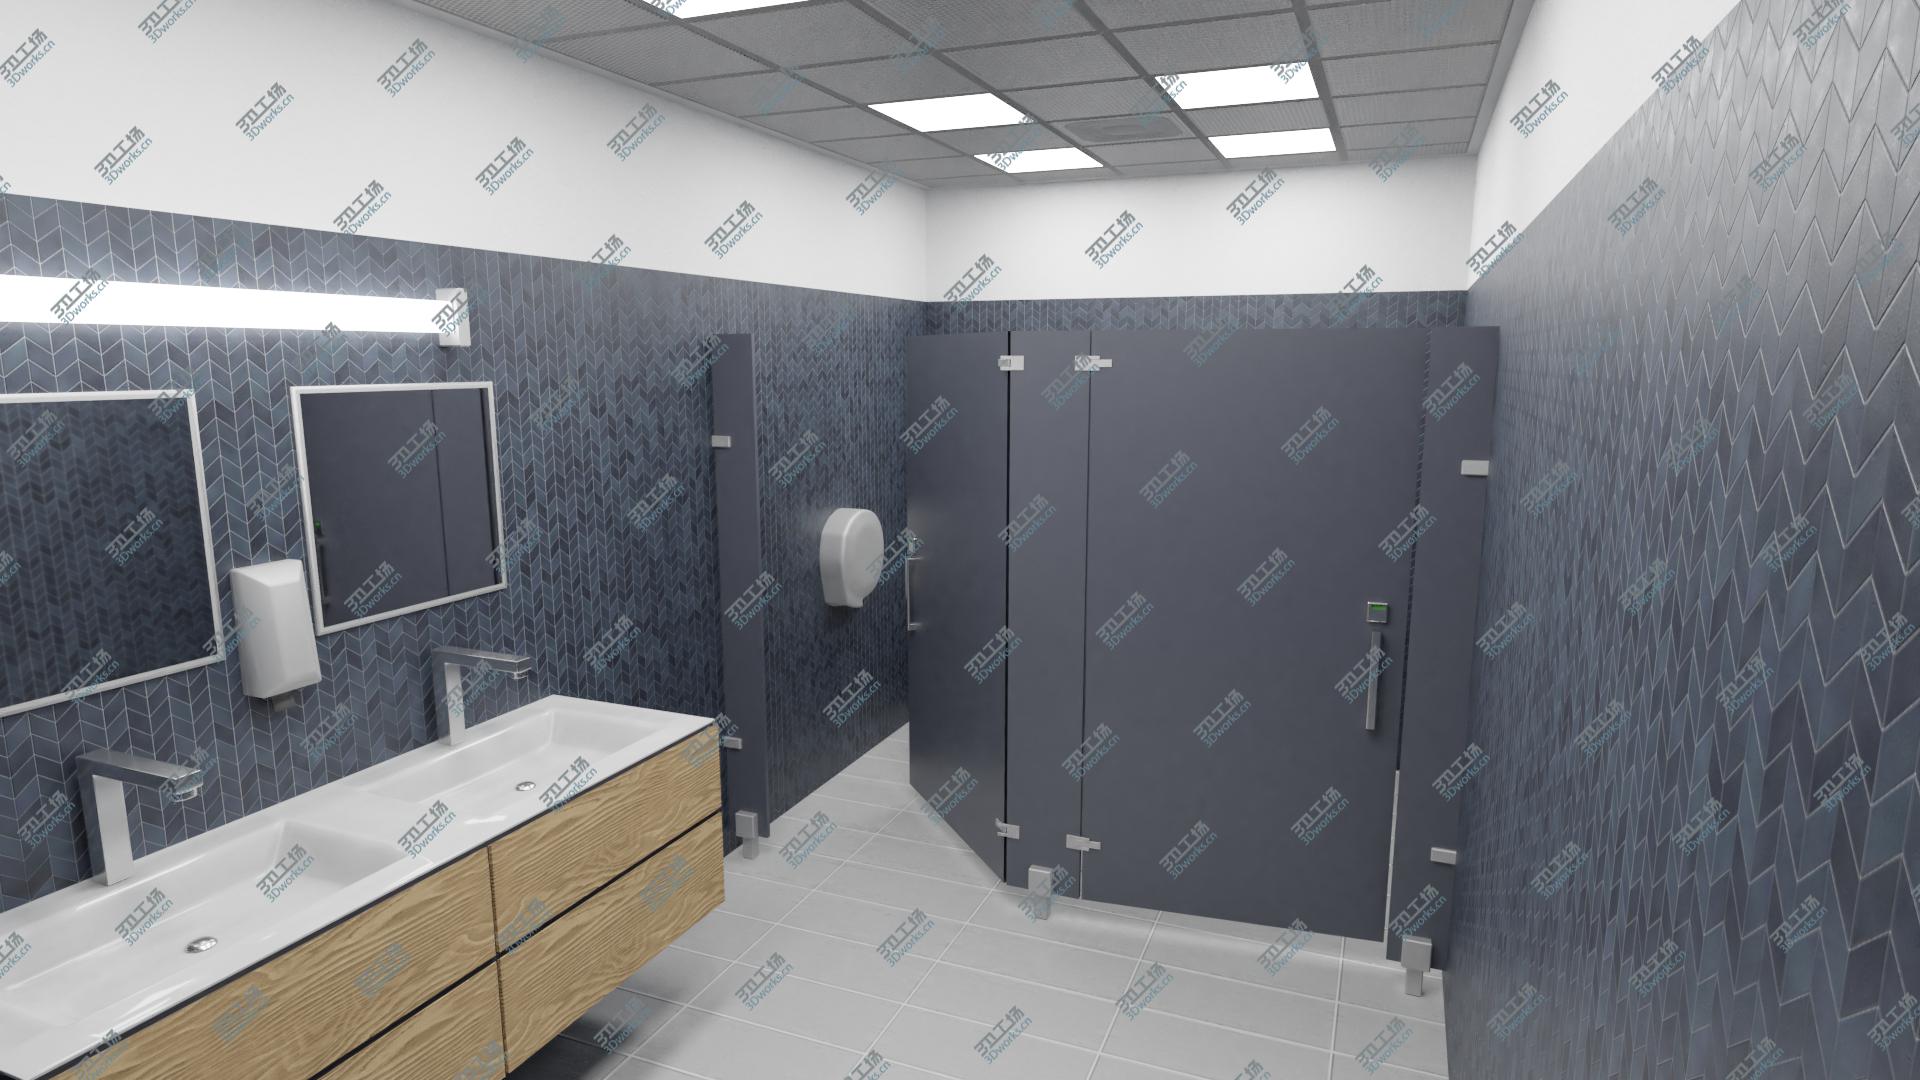 images/goods_img/2021040161/Realistic Bathroom Scene 8K PBR 3D model/2.jpg